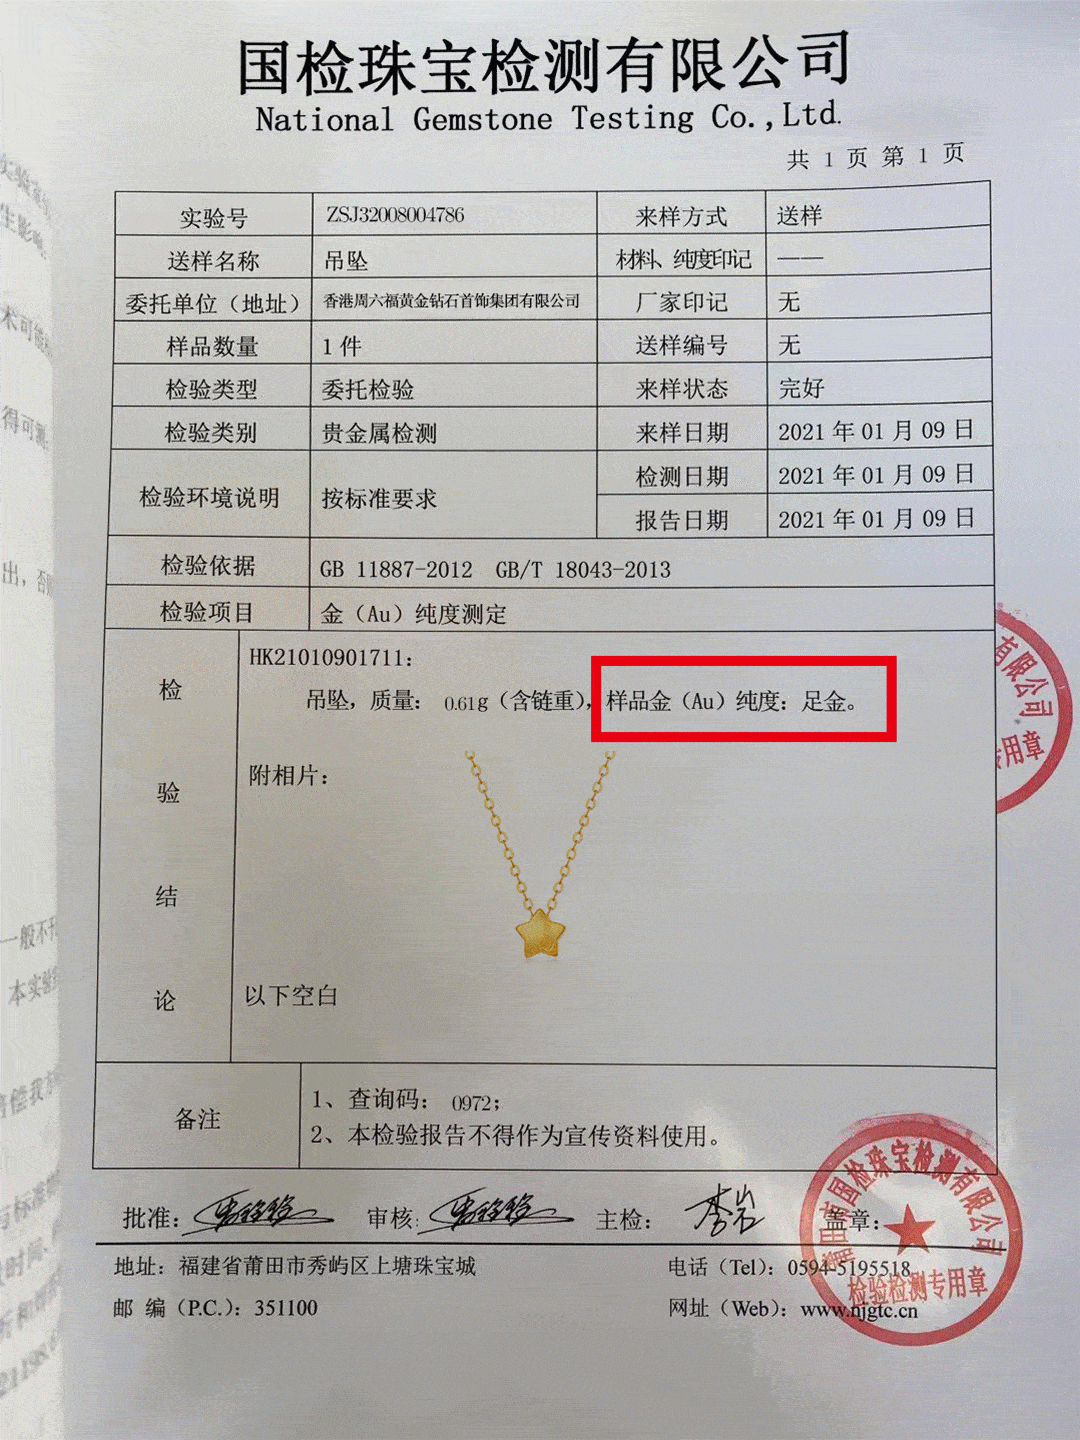 检测报告当然也有,香港周六福是专业做珠宝的品牌,一定让顾客买的放心